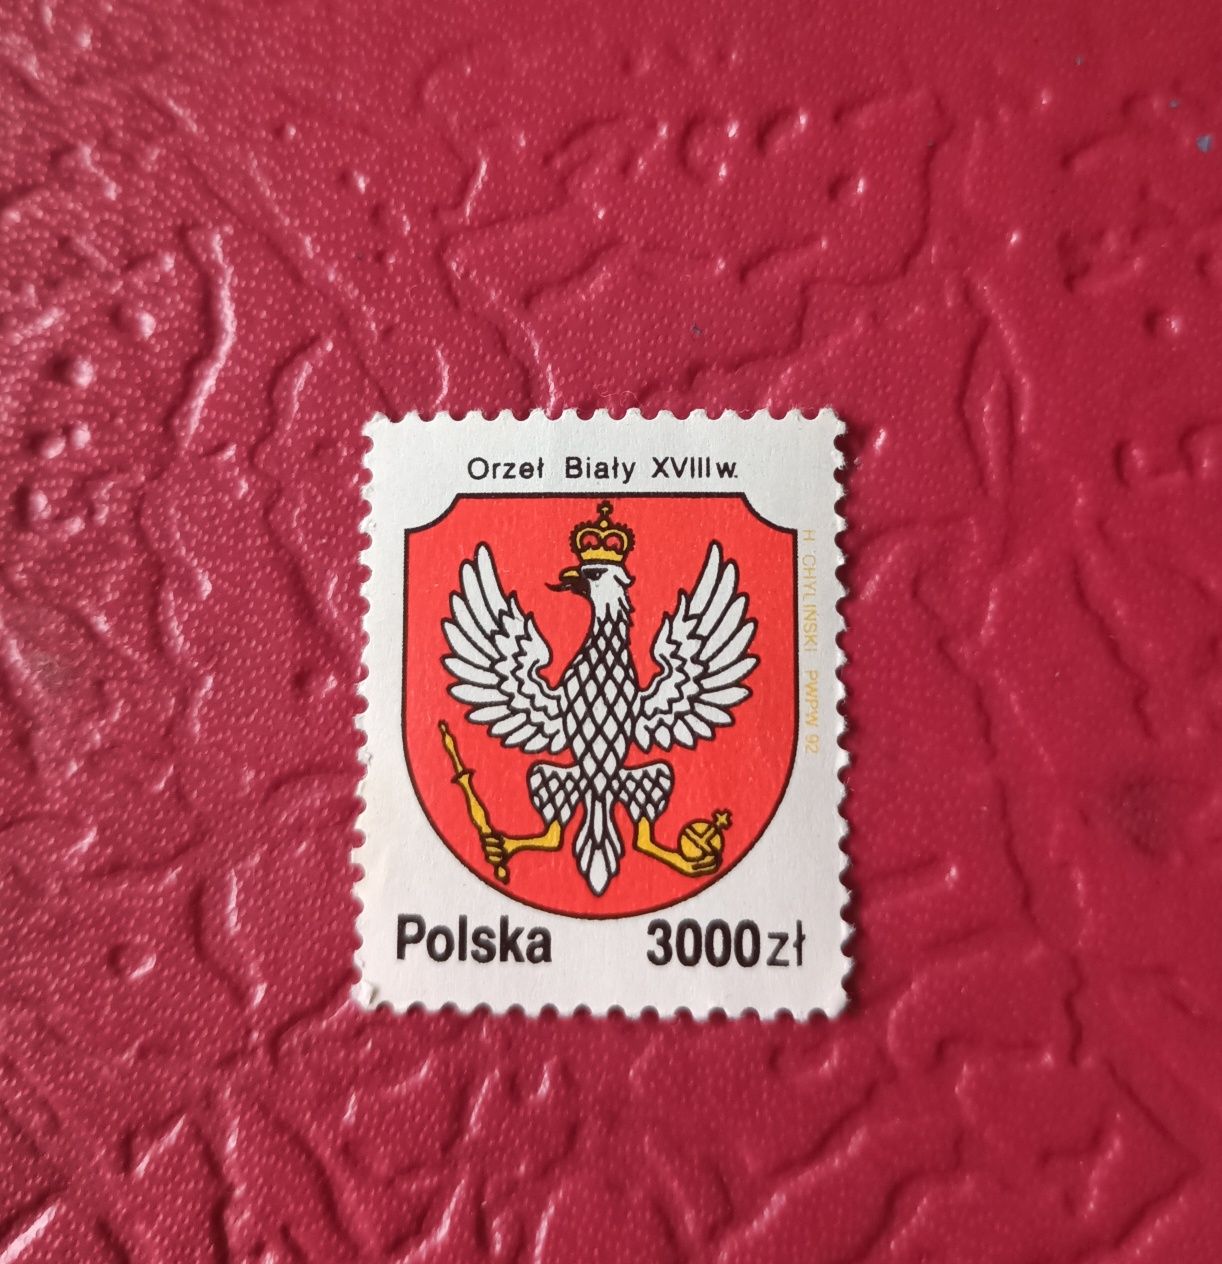 Znaczek pocztowy Orzeł Biały XVIII w. 3000 zł